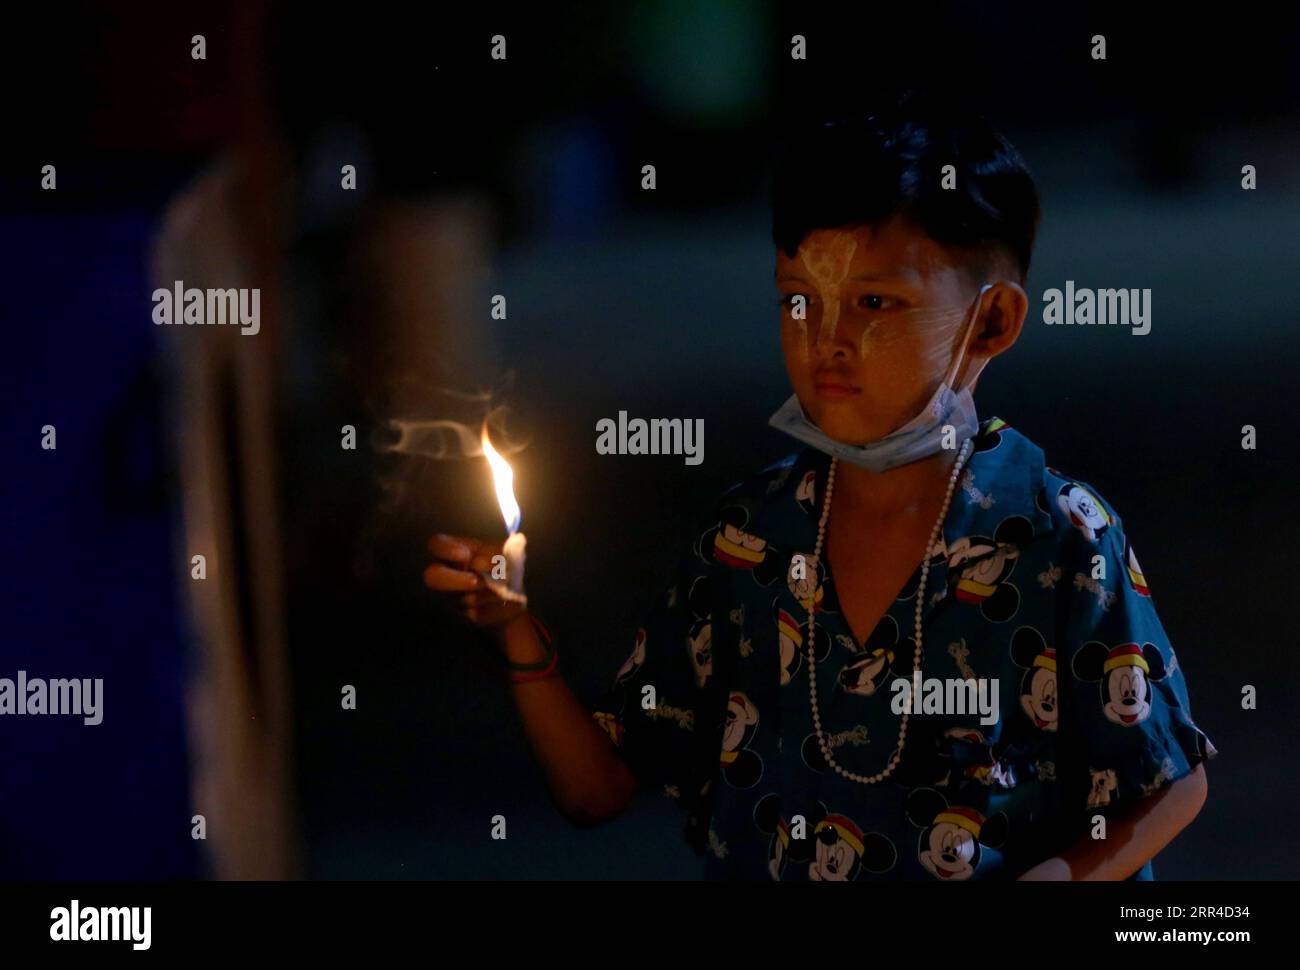 201130 -- MYANMAR, 30. November 2020 -- Ein Kind zündet eine Kerze während des traditionellen Tazaungdaing Festivals in Yangon, Myanmar, 29. November 2020 an. Das Tazaungdaing Festival, auch als Festival der Lichter bekannt, fällt auf den Vollmondtag im achten Monat des traditionellen Myanmar Kalenders. Es wird als Nationalfeiertag in Myanmar gefeiert und markiert das Ende der Regenzeit. MYANMAR-YANGON-FULL MOON-TAZAUNGDAING FESTIVAL UXAUNG PUBLICATIONXNOTXINXCHN Stockfoto